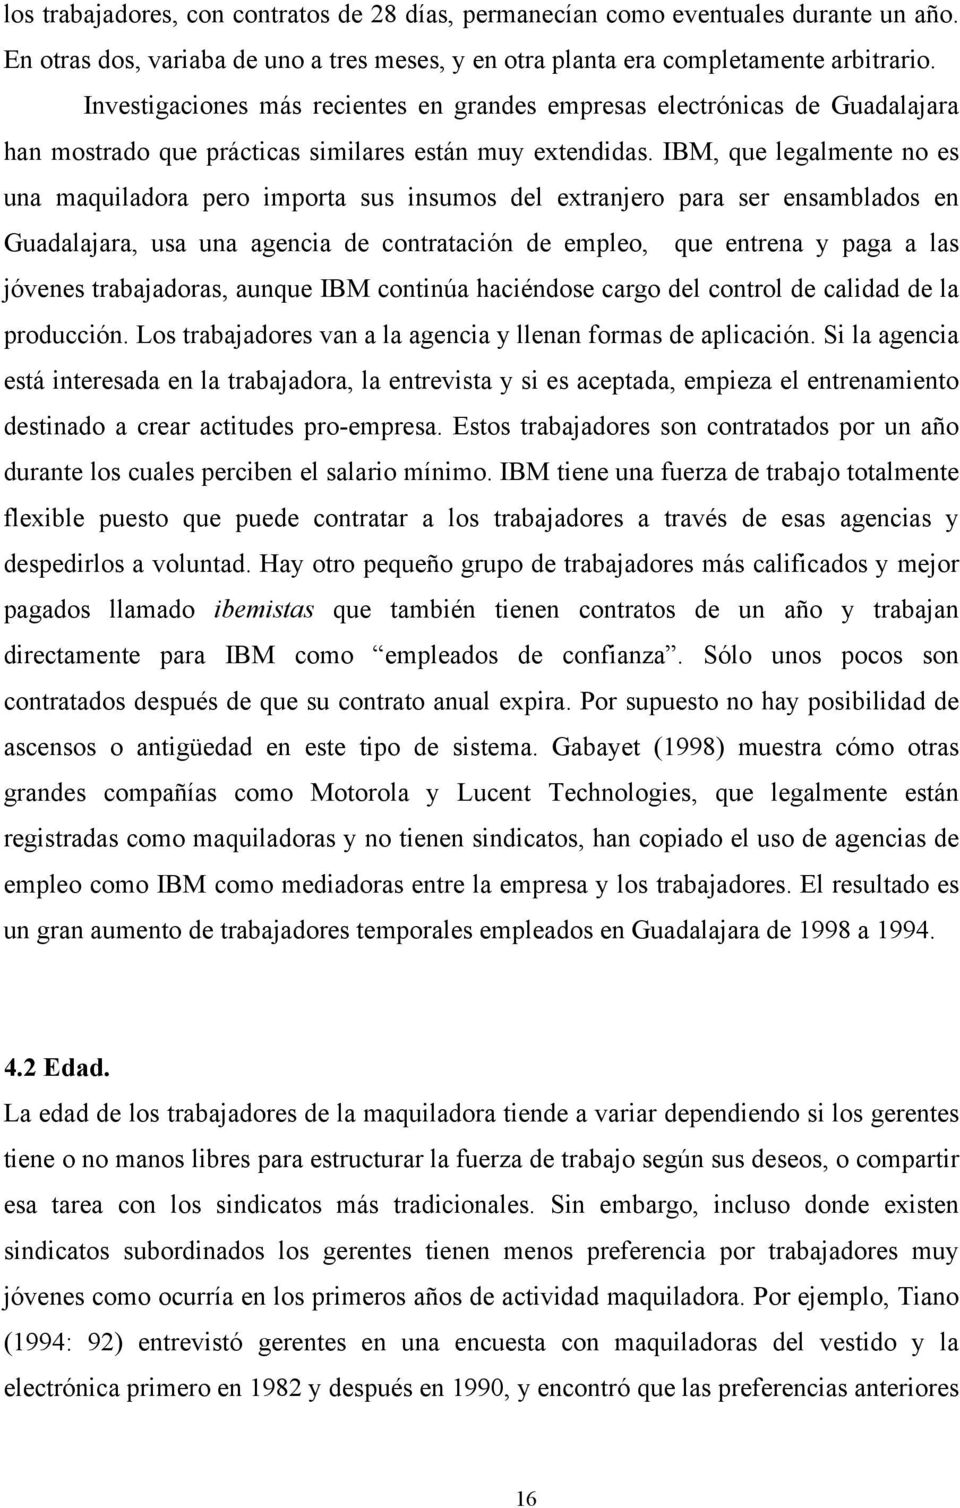 IBM, que legalmente no es una maquiladora pero importa sus insumos del extranjero para ser ensamblados en Guadalajara, usa una agencia de contratación de empleo, que entrena y paga a las jóvenes